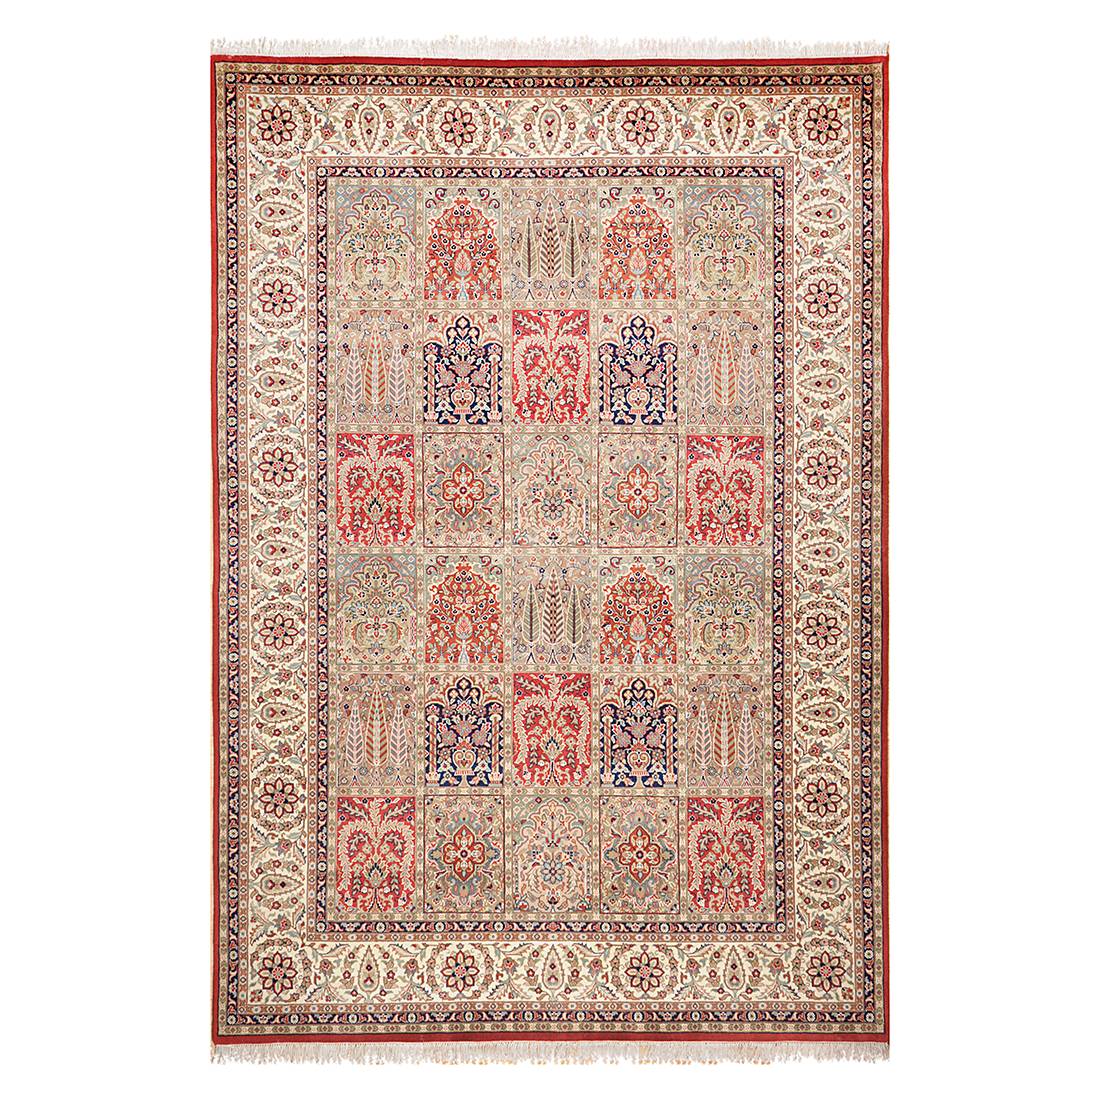 Teppich Sirsa Silk touch - Seide/Rot - 140 cm x 200 cm, Theko die markenteppiche